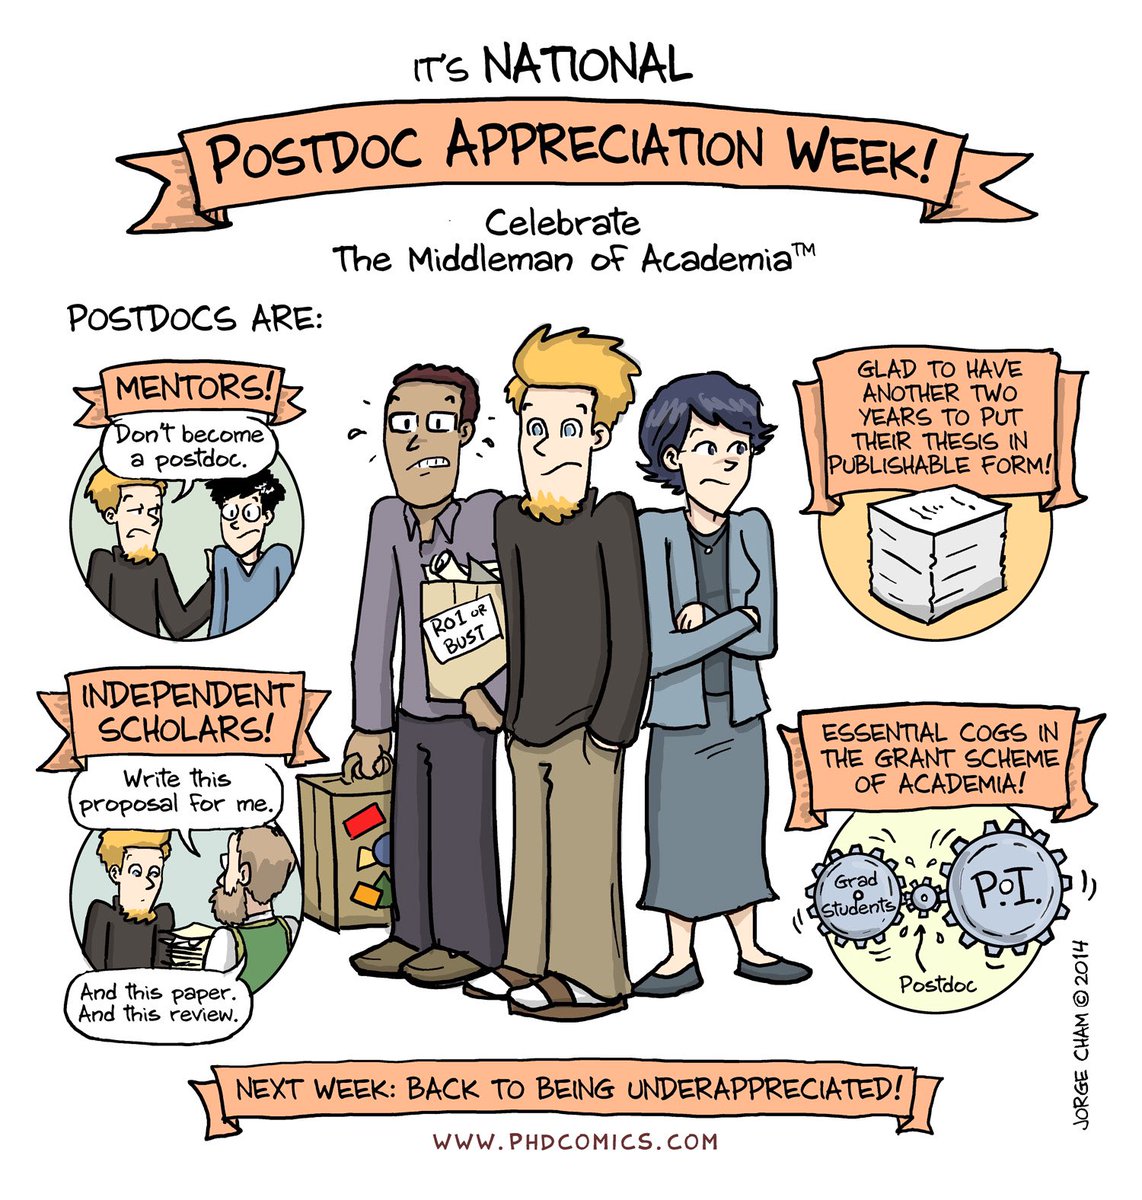 Happy postdoc appreciation week to all Postdocs!!! 🥳😎#PostdocAppreciationWeek  #NPAW2021